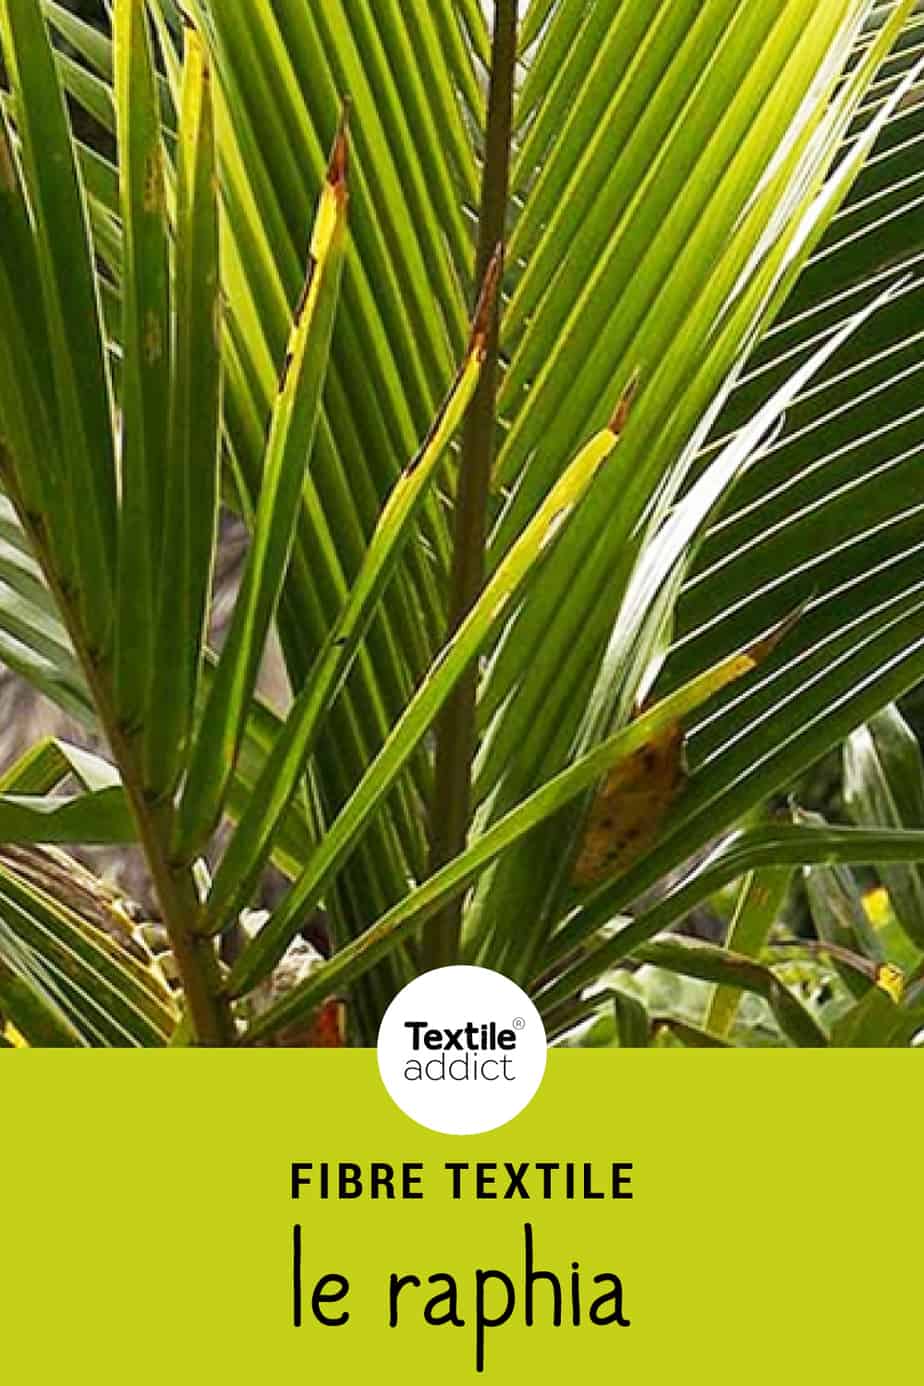 palmier à fibre textile en 6 lettres